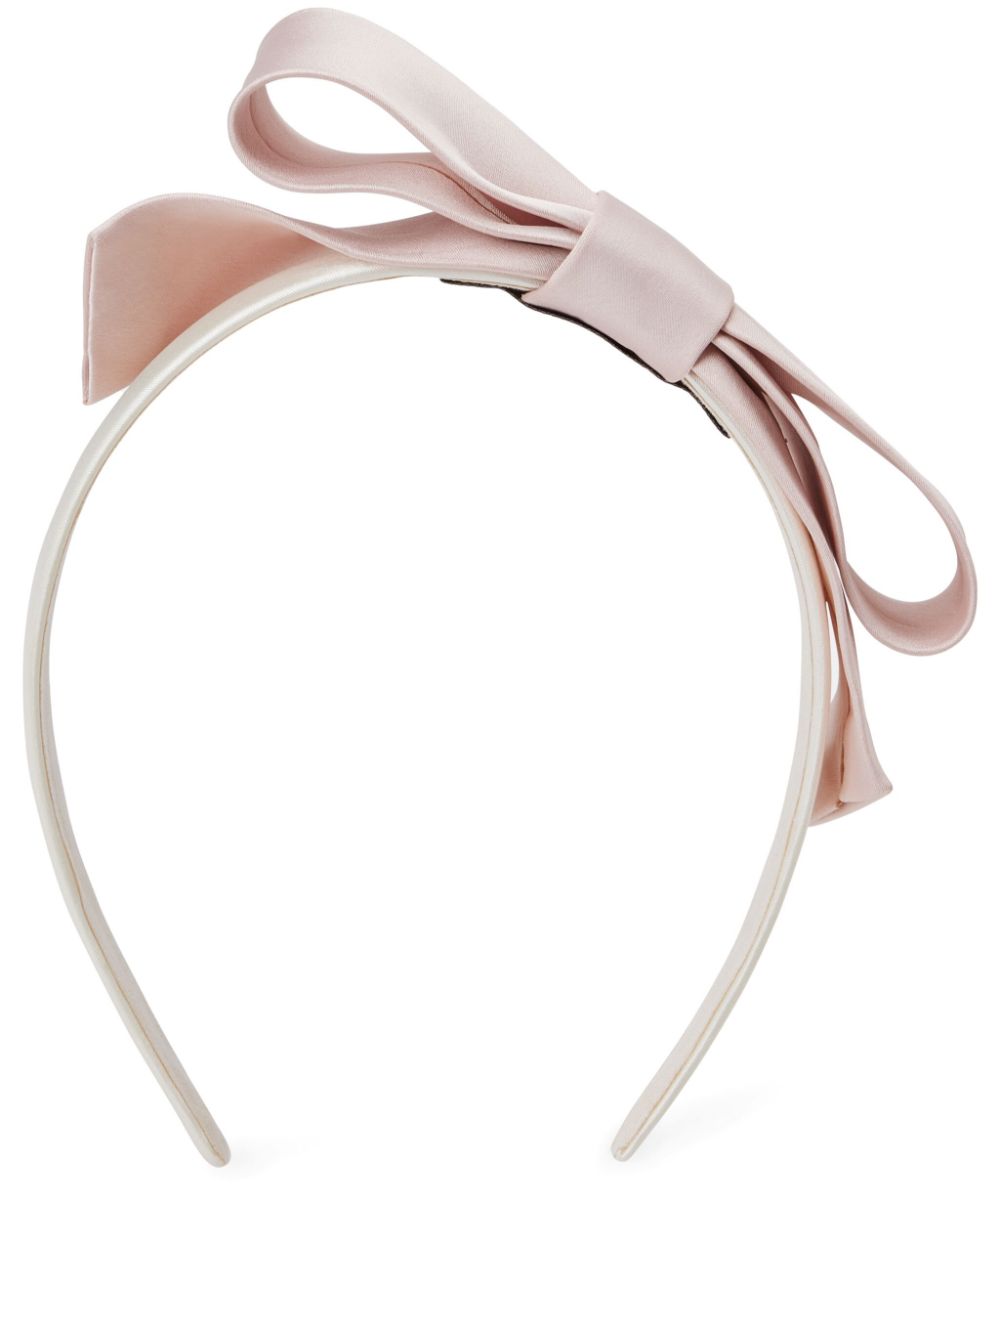 Hucklebones London Babies' Satin Bow Headband In Pink